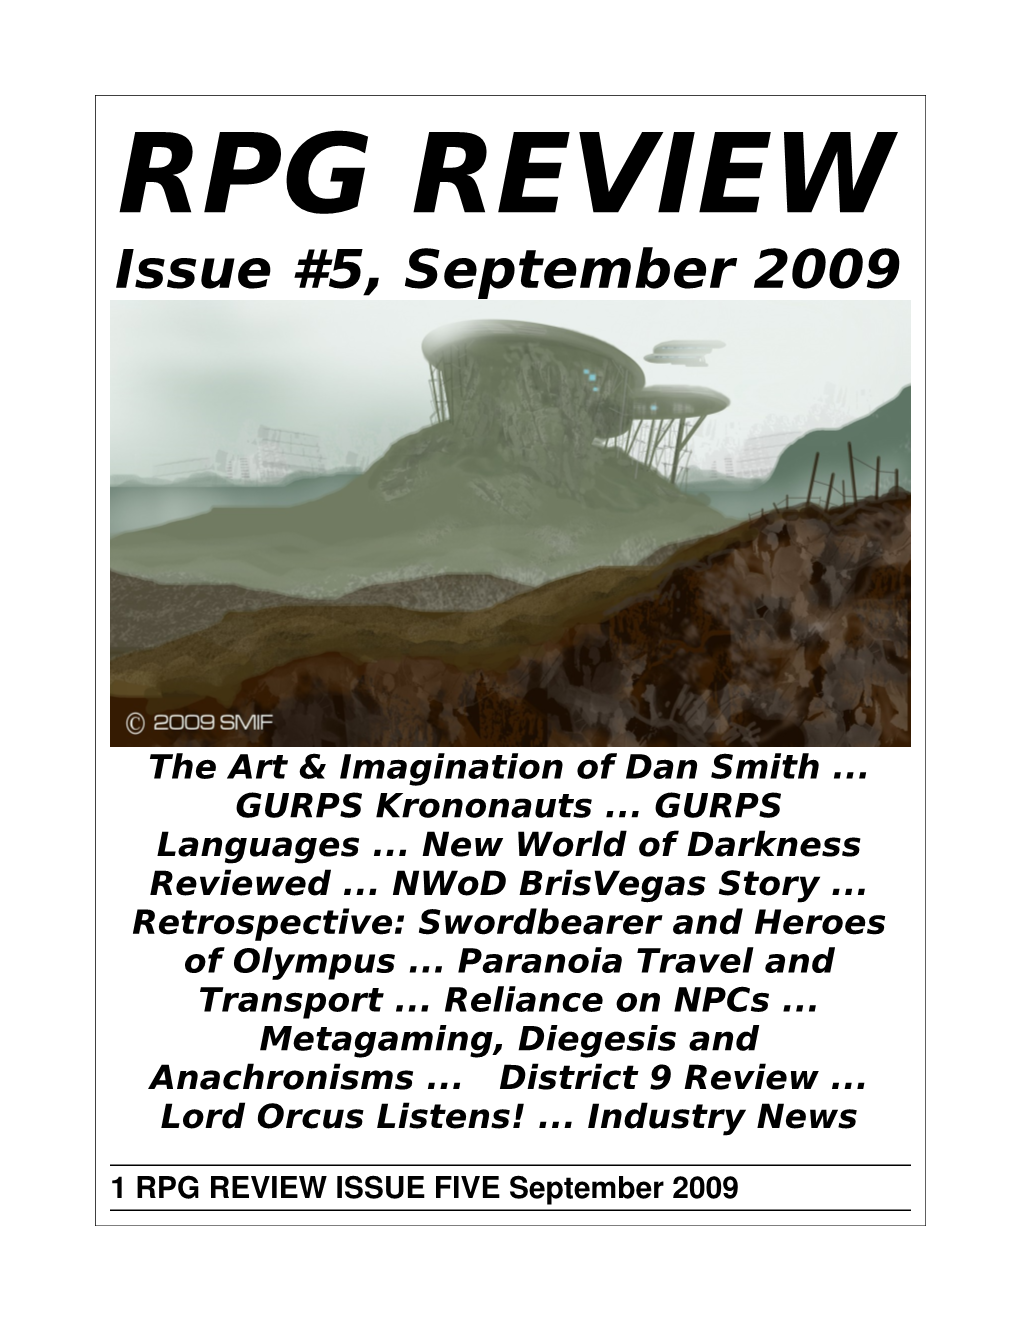 RPG Review Issue 5, September 2009